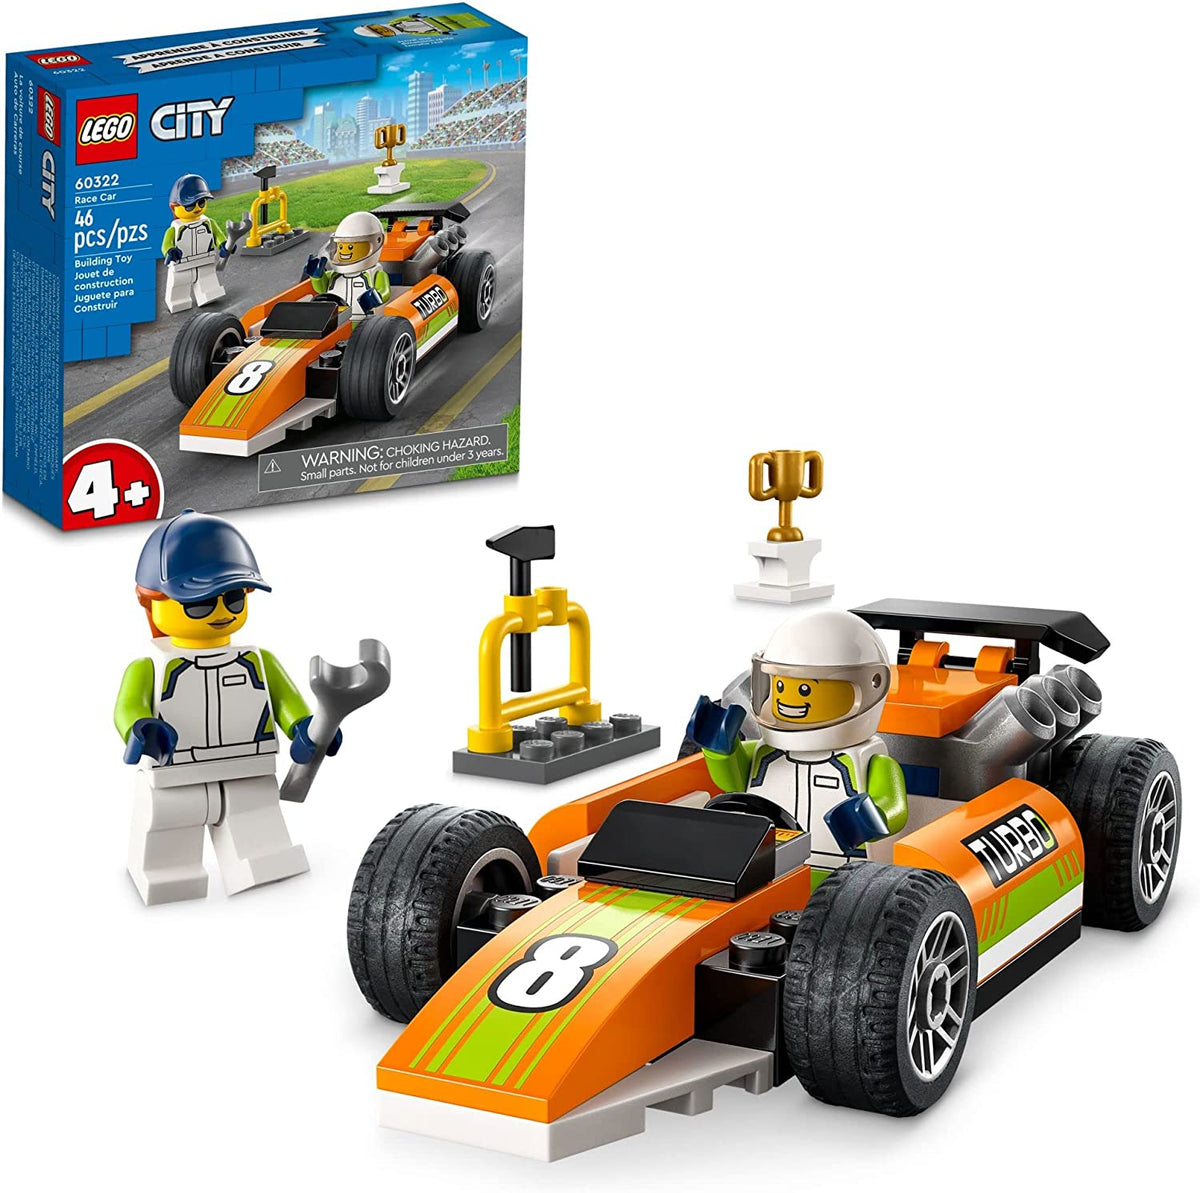 LEGO 60322 CITY RACE CAR